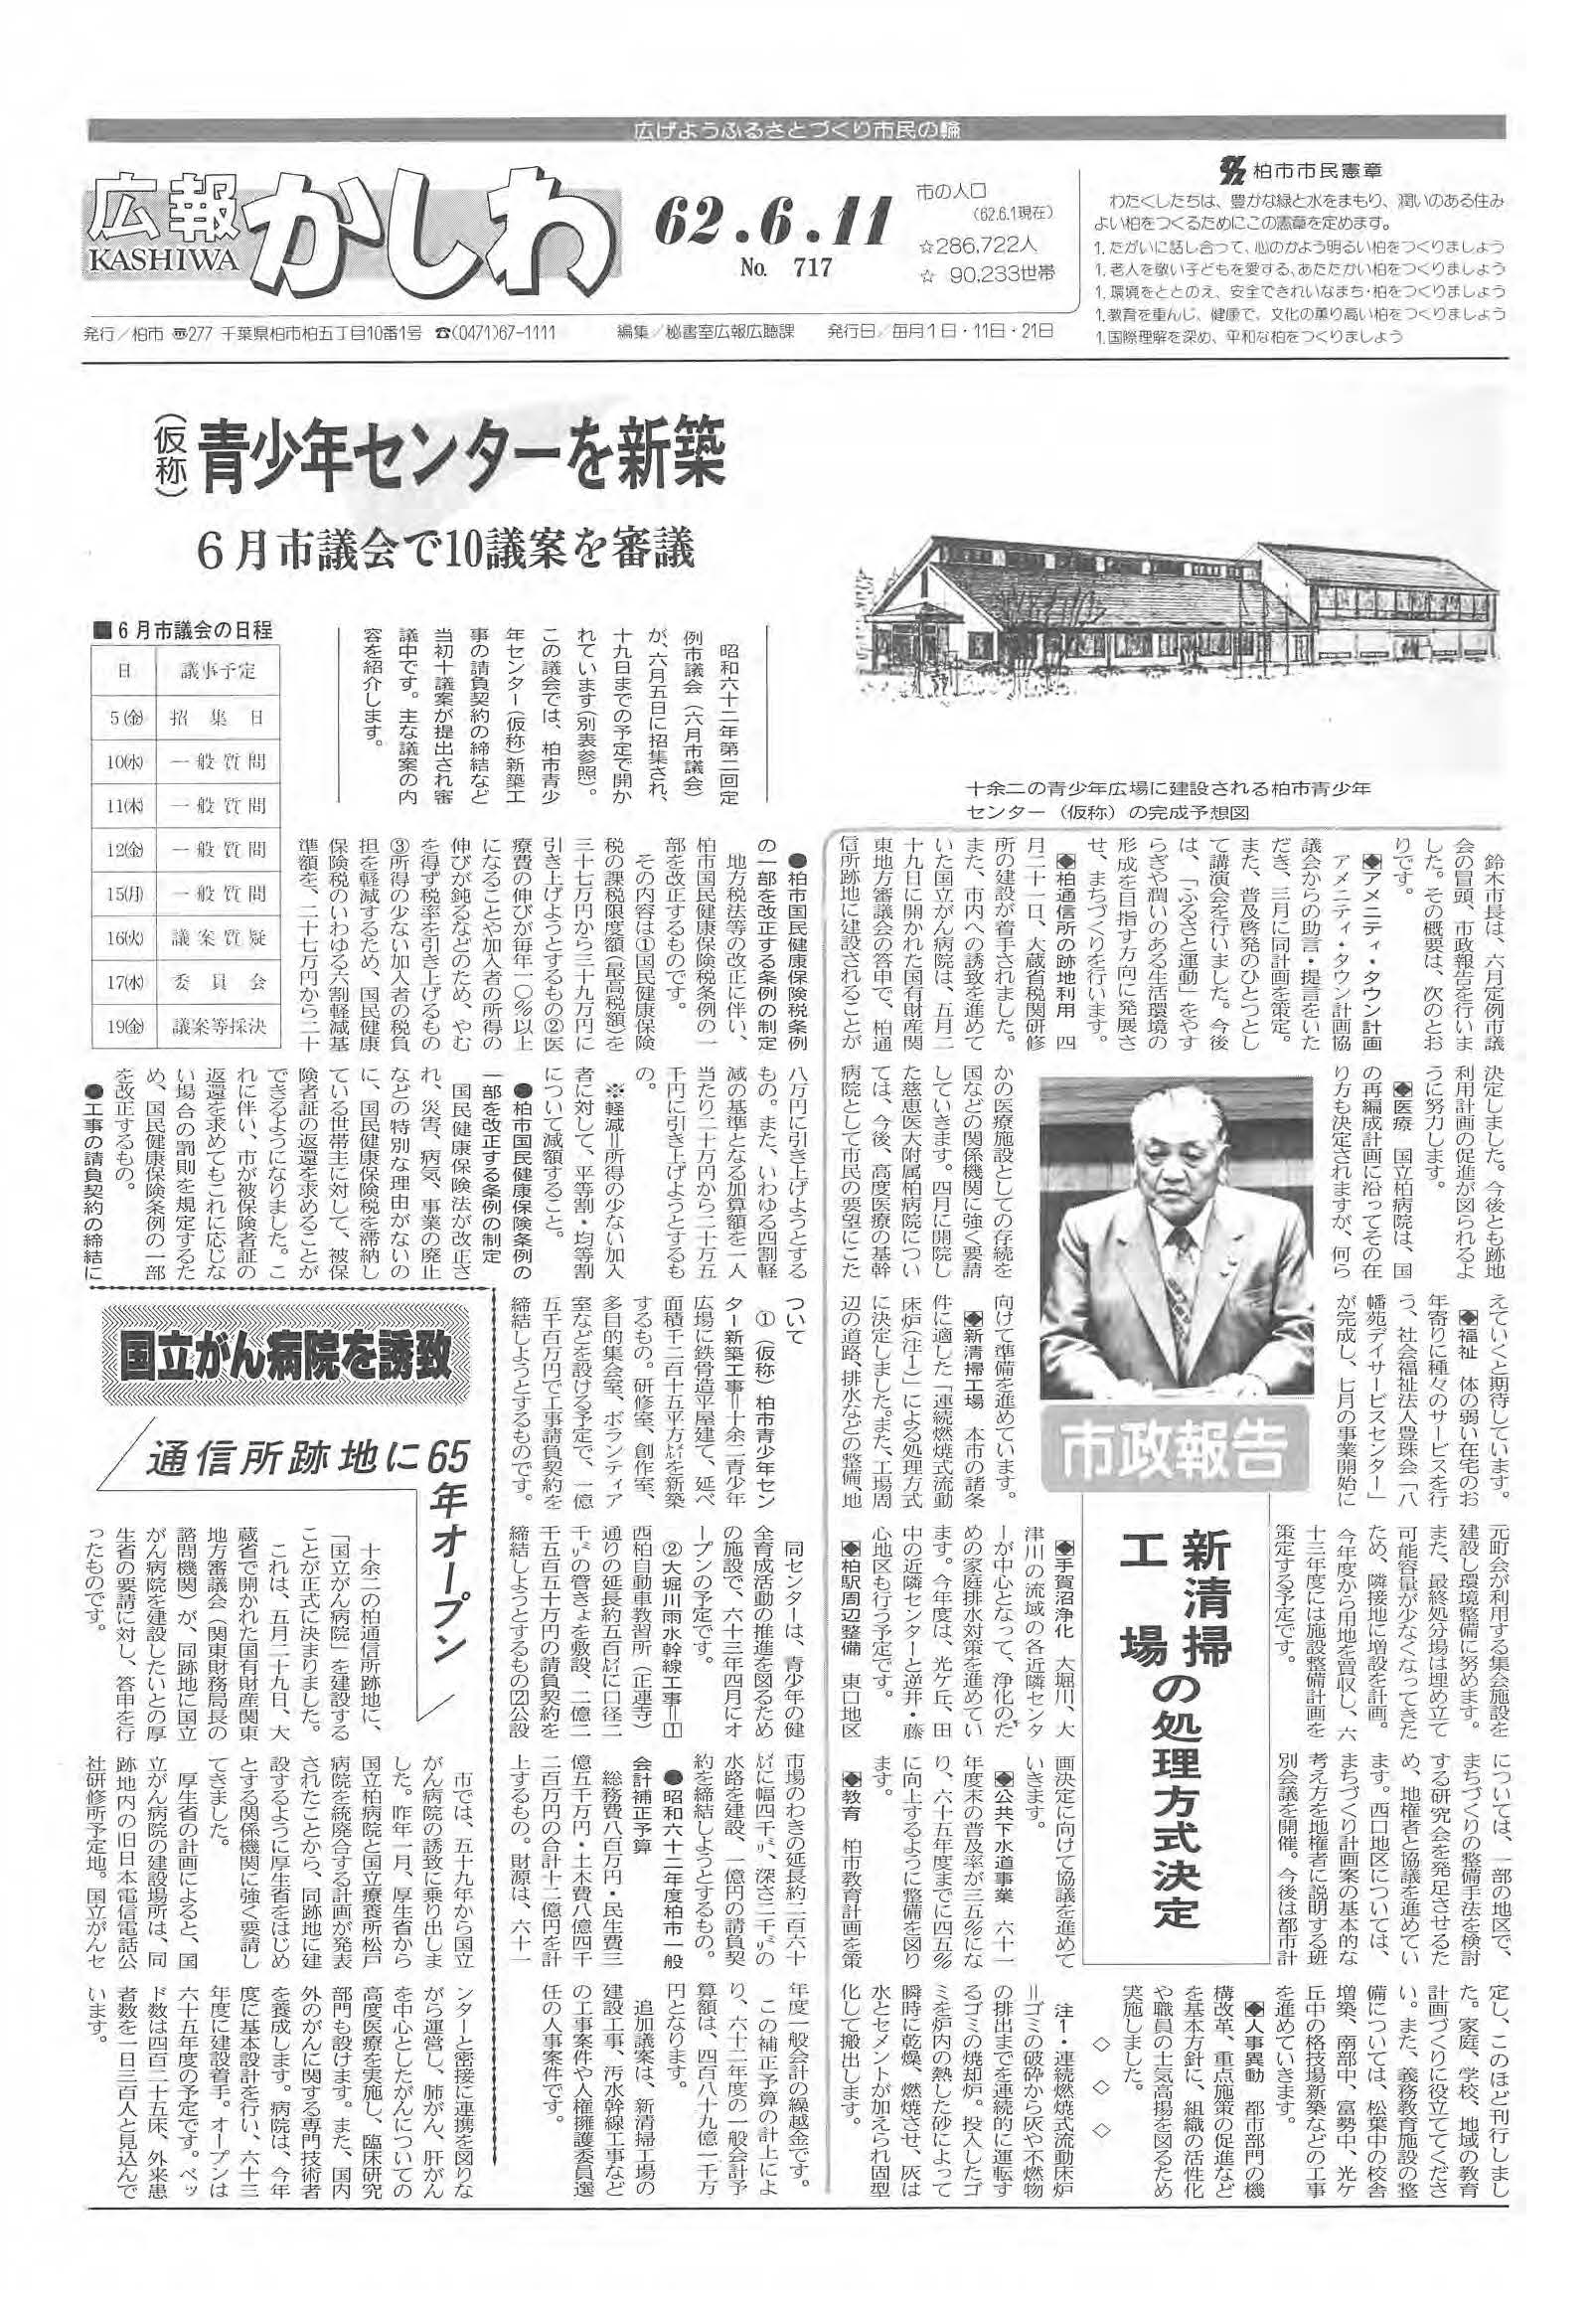 広報かしわ　昭和62年6月11日発行　717号